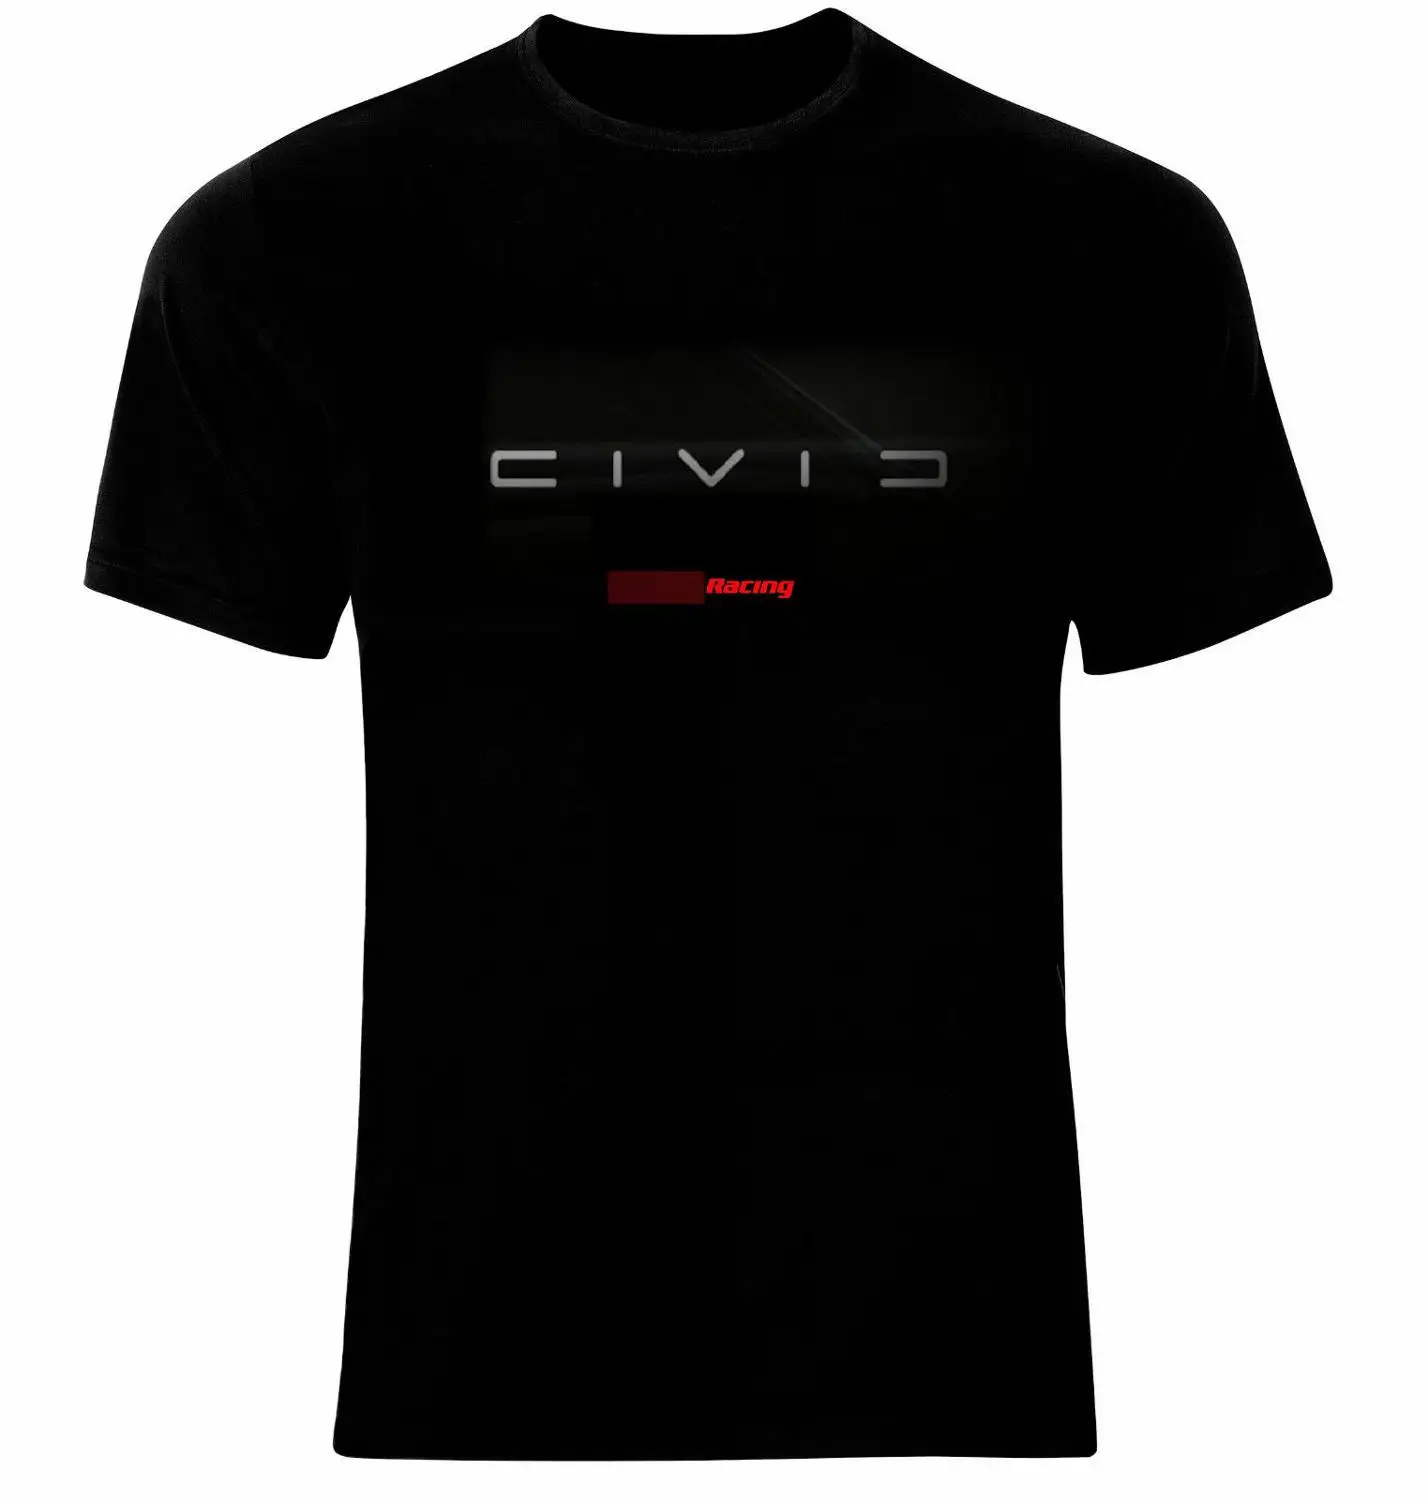 Новая летняя футболка с японским автомобилем Civic type R, футболка с принтом, крутая футболка